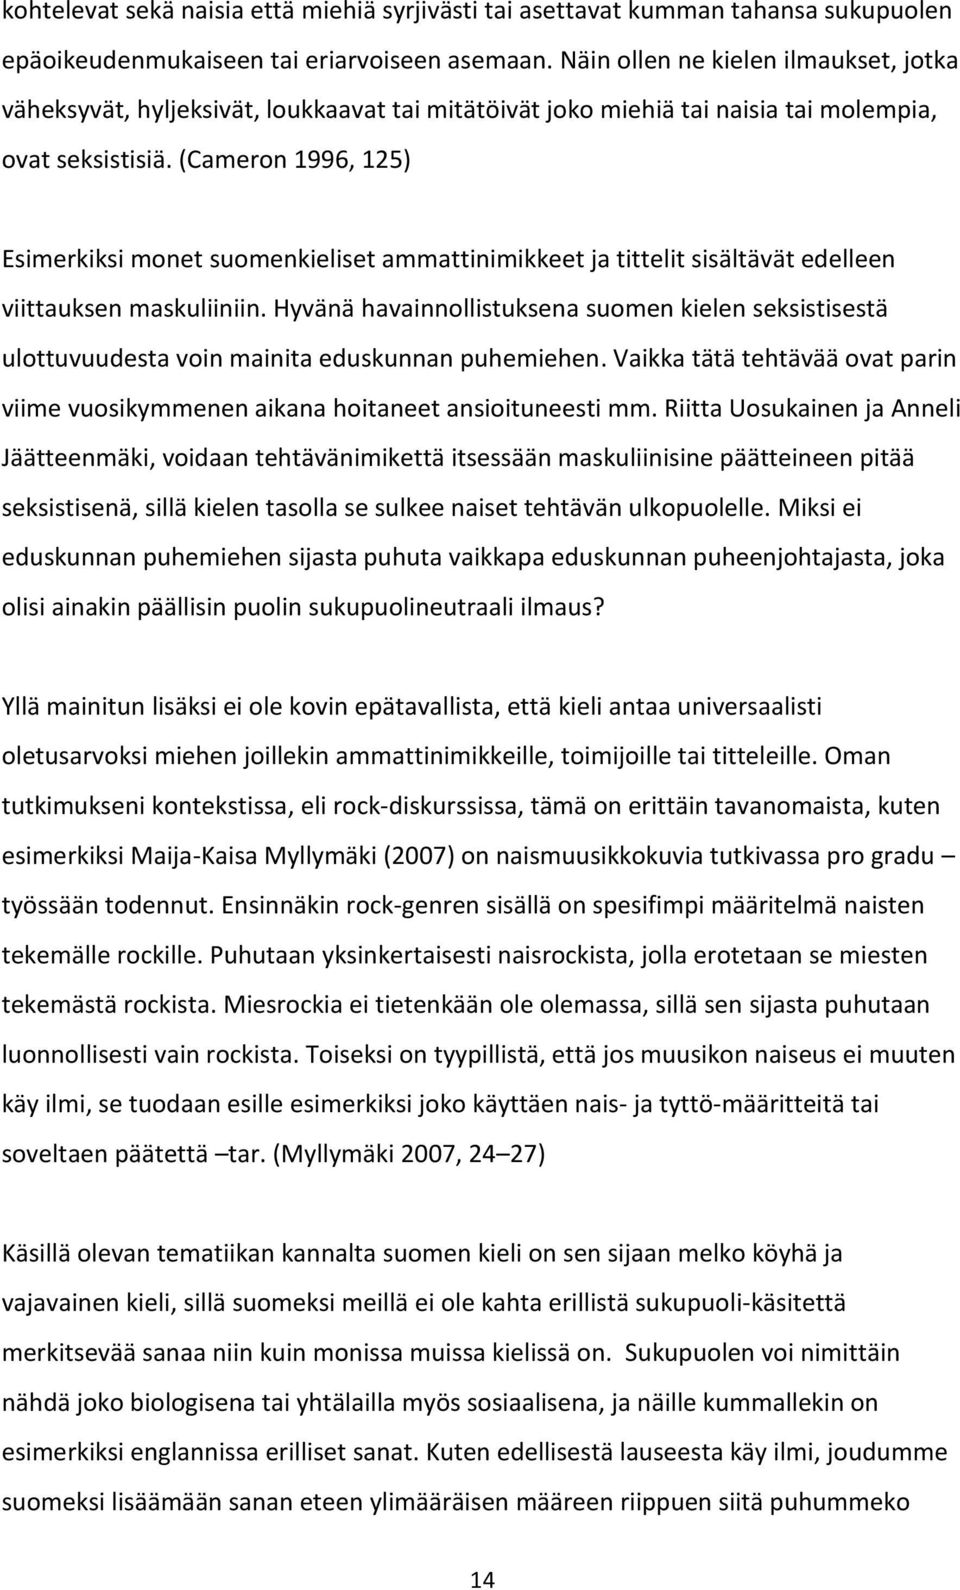 (Cameron 1996, 125) Esimerkiksi monet suomenkieliset ammattinimikkeet ja tittelit sisältävät edelleen viittauksen maskuliiniin.